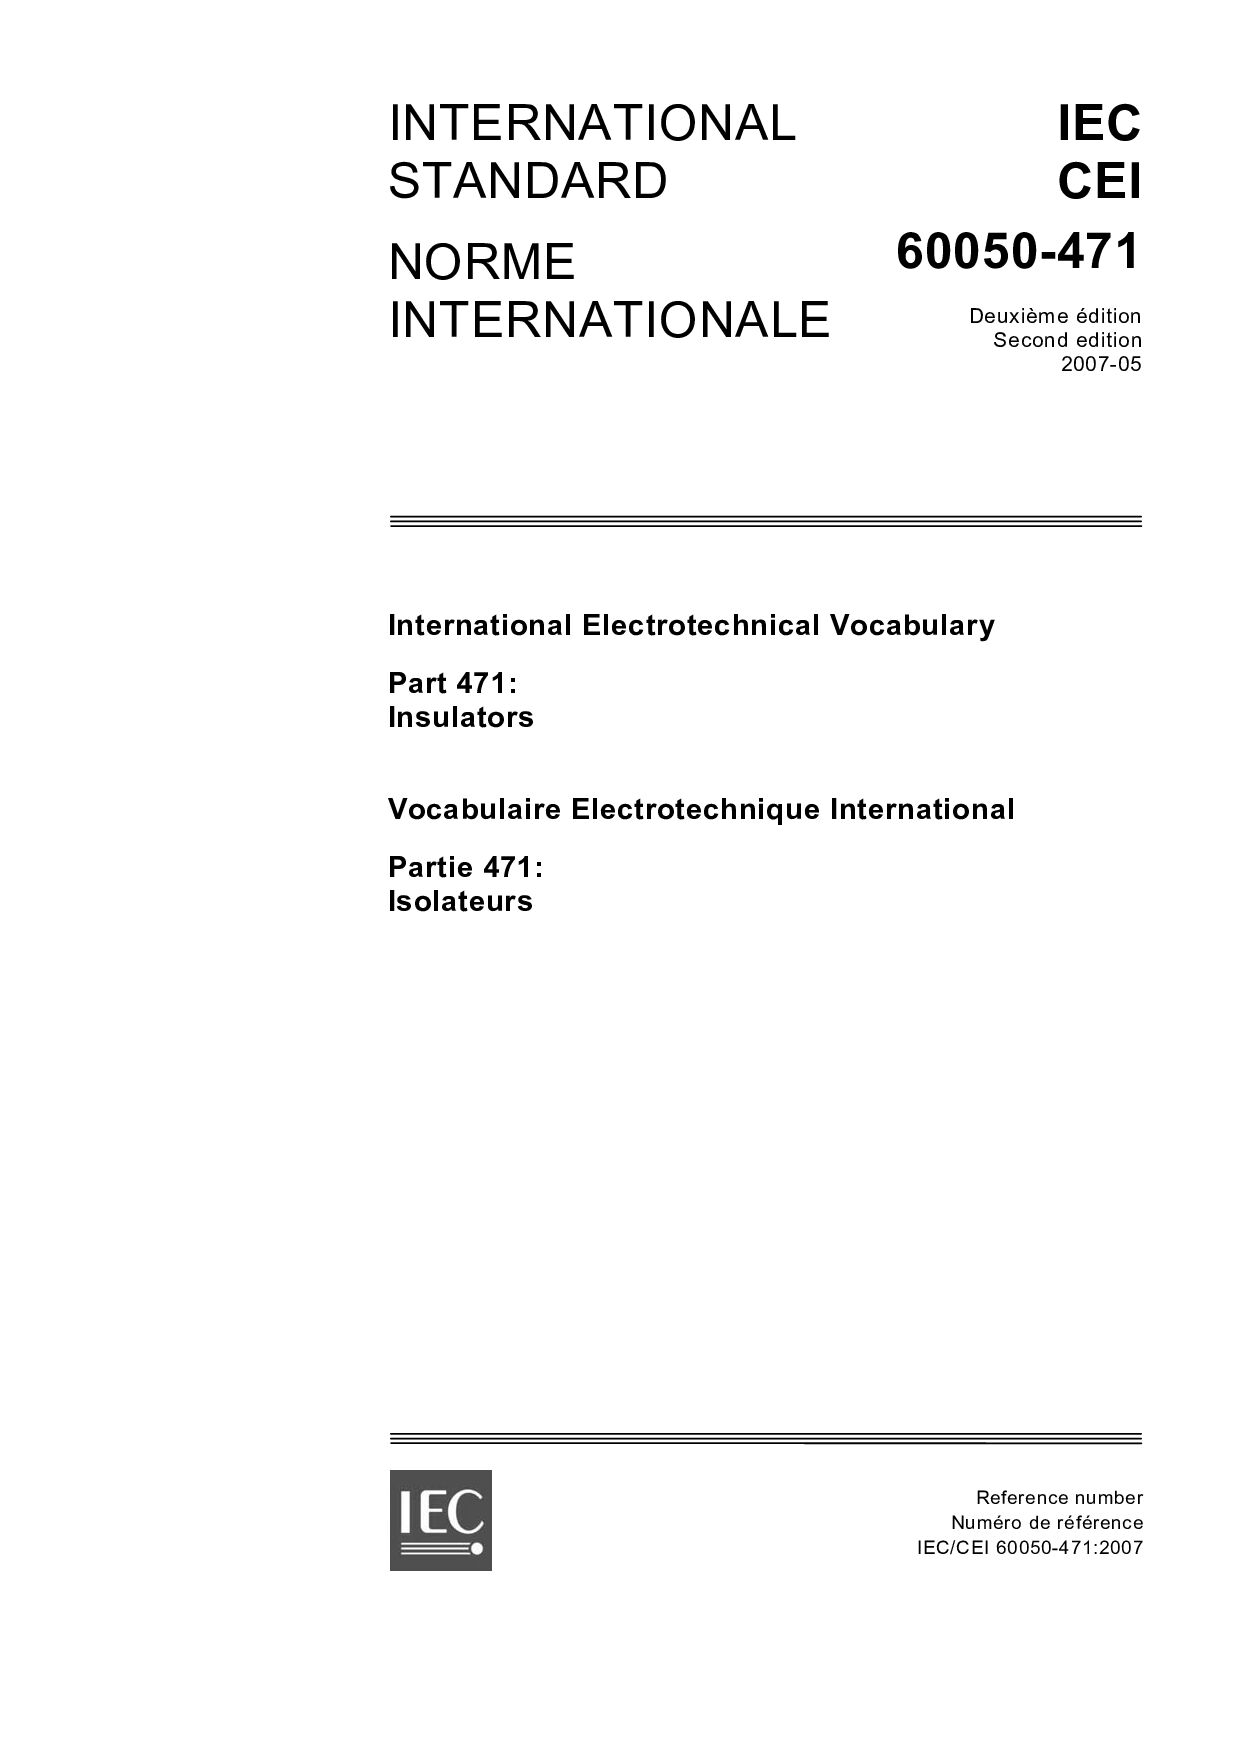 IEC 60050-471:2007